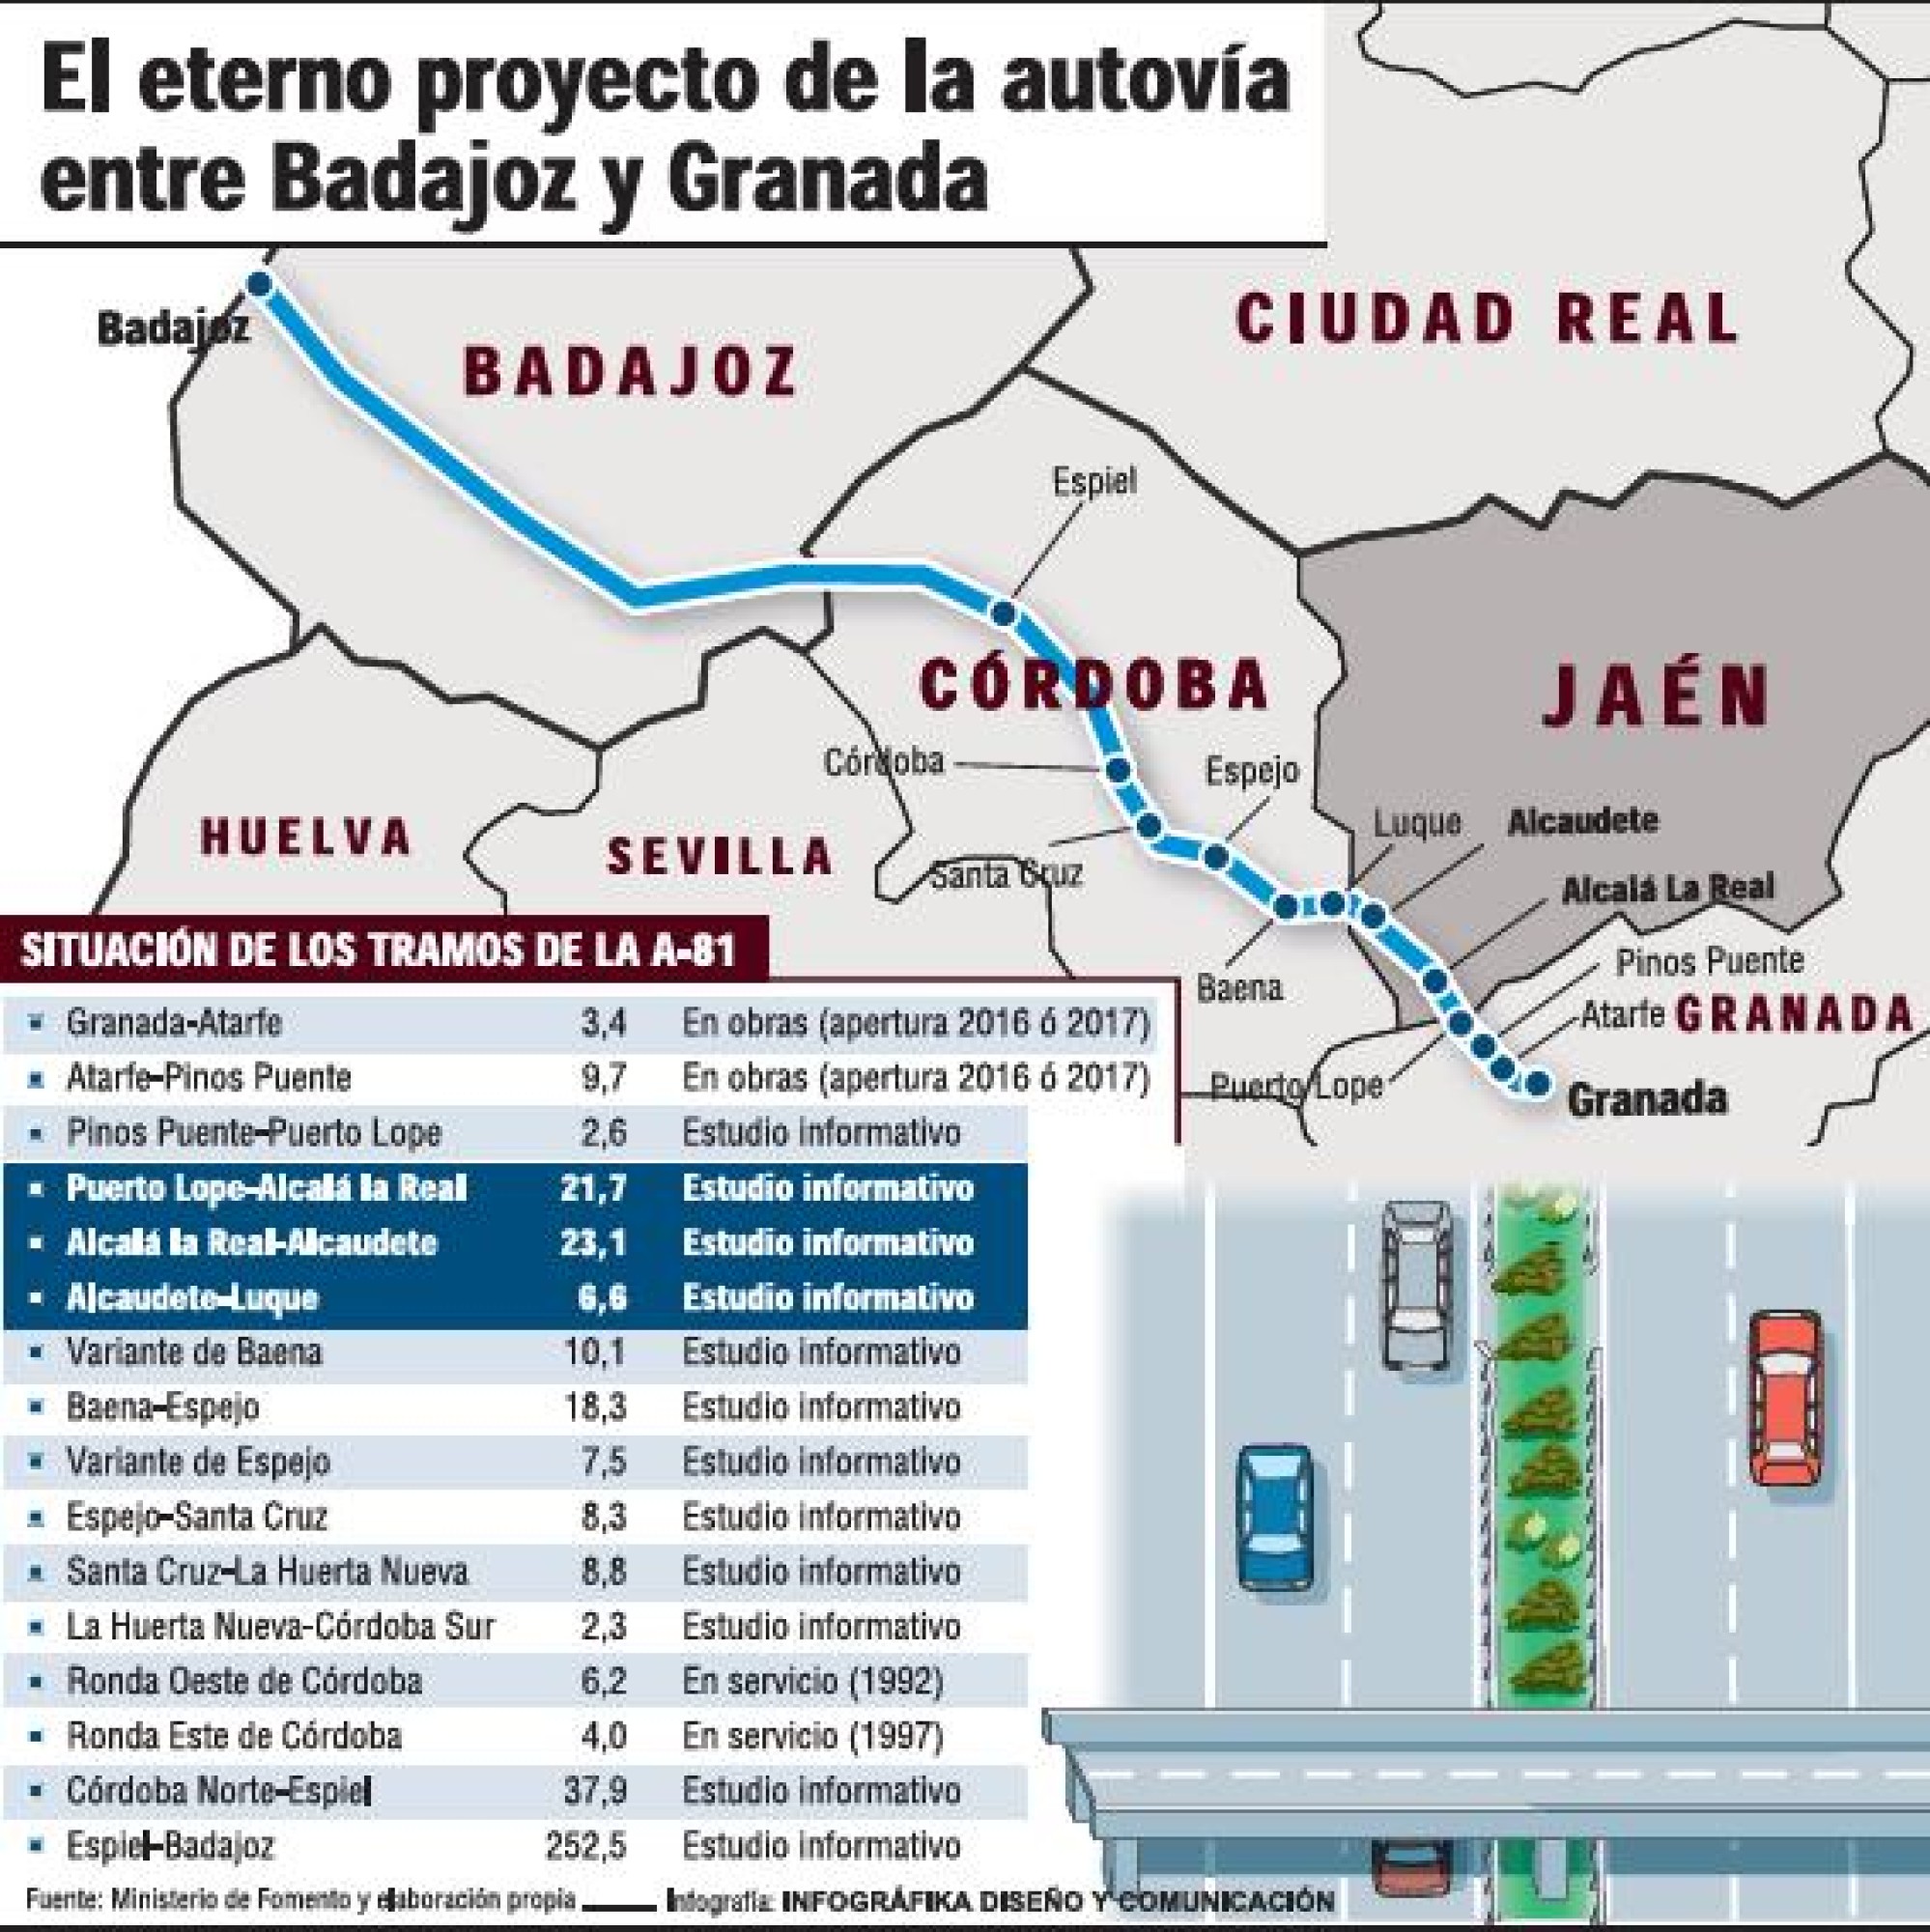 La obra aprobada por el Ministerio de fomento y el Ayuntamiento de Badajoz harán aumentar el tiempo de viaje en la N-432 carretera de Sevilla.